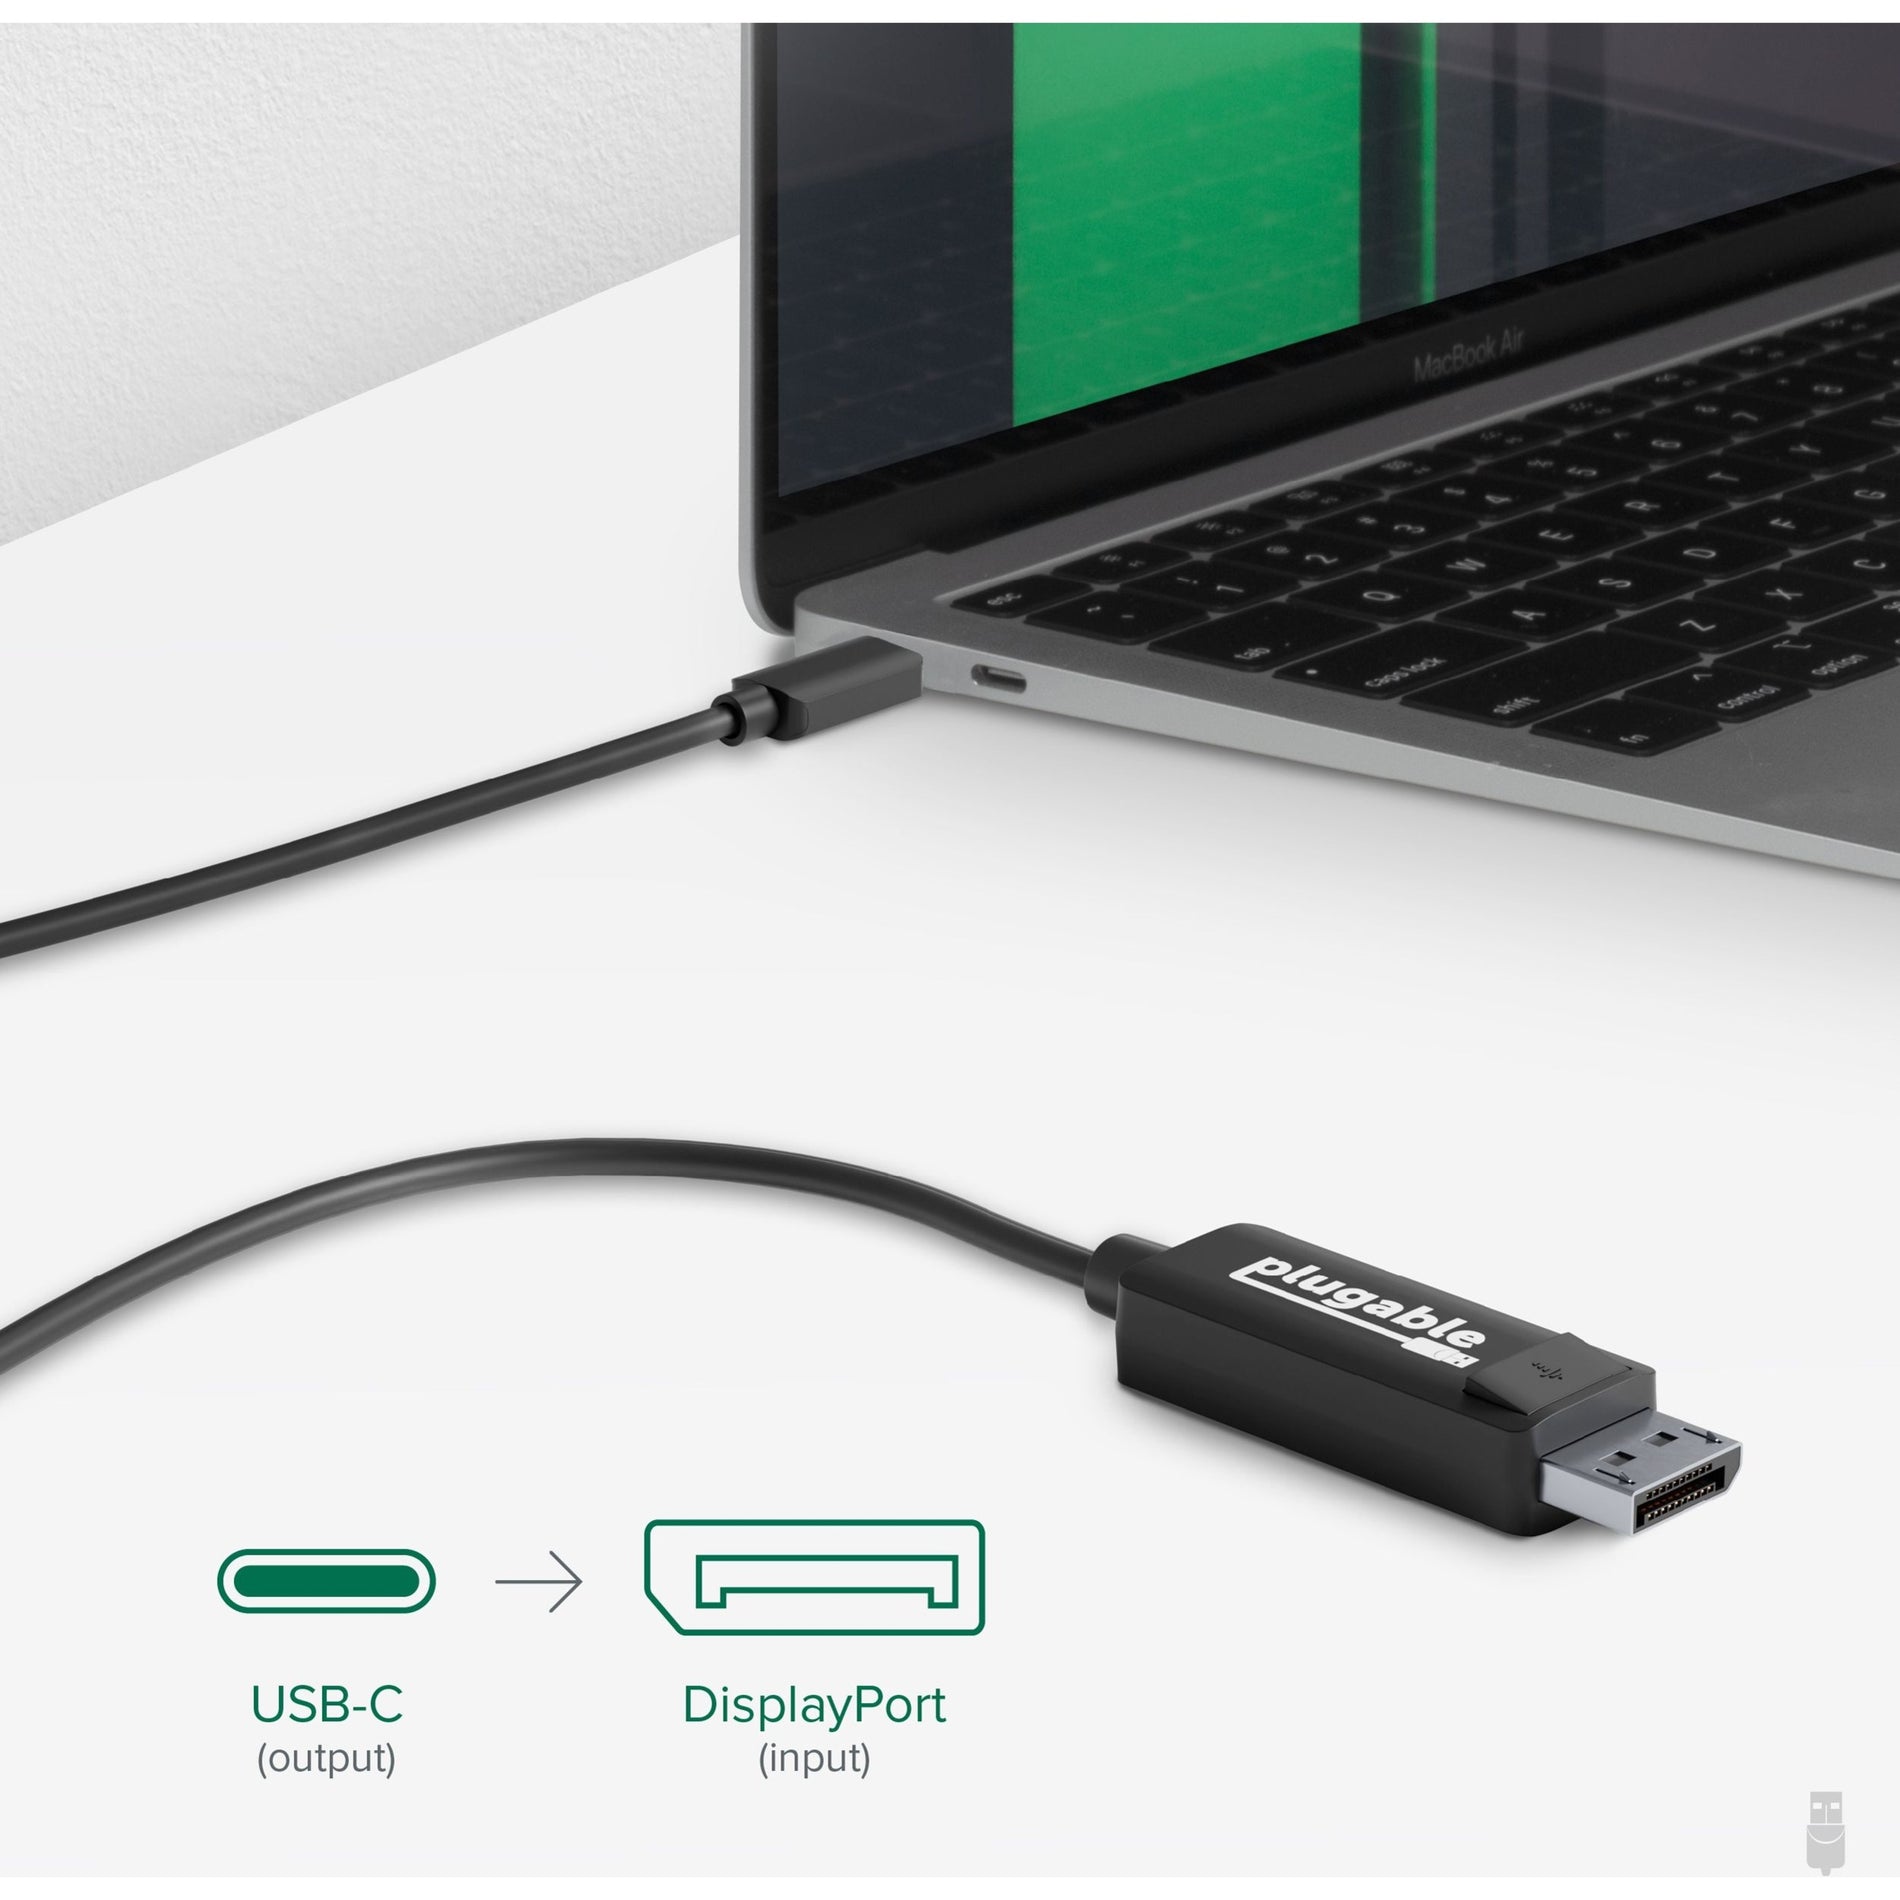 USBC-DP -> USBC-DP USB-C -> USB-C DisplayPort -> DisplayPort Adapter -> Adattatore Cable -> Cavo Connect -> Connetti Devices -> Dispositivi Ease -> Facilità